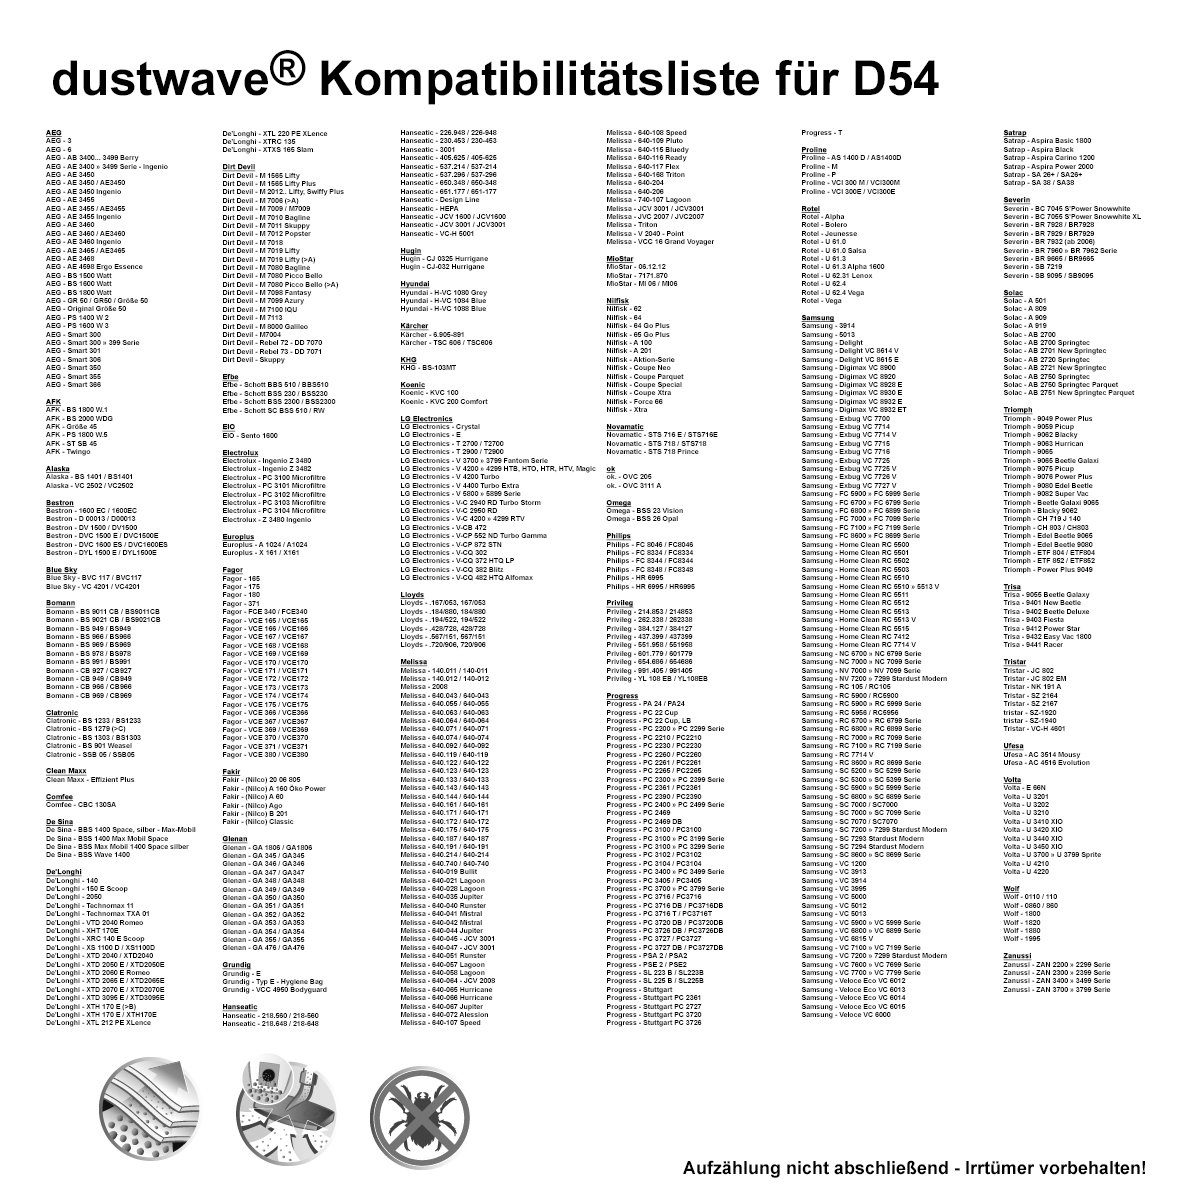 1 Staubsaugerbeutel 1 zuschneidbar) Dustwave für Test-Set, St., passend - S, 1 + Bestron 1800 Test-Set, Staubsaugerbeutel DS (ca. 15x15cm Hepa-Filter